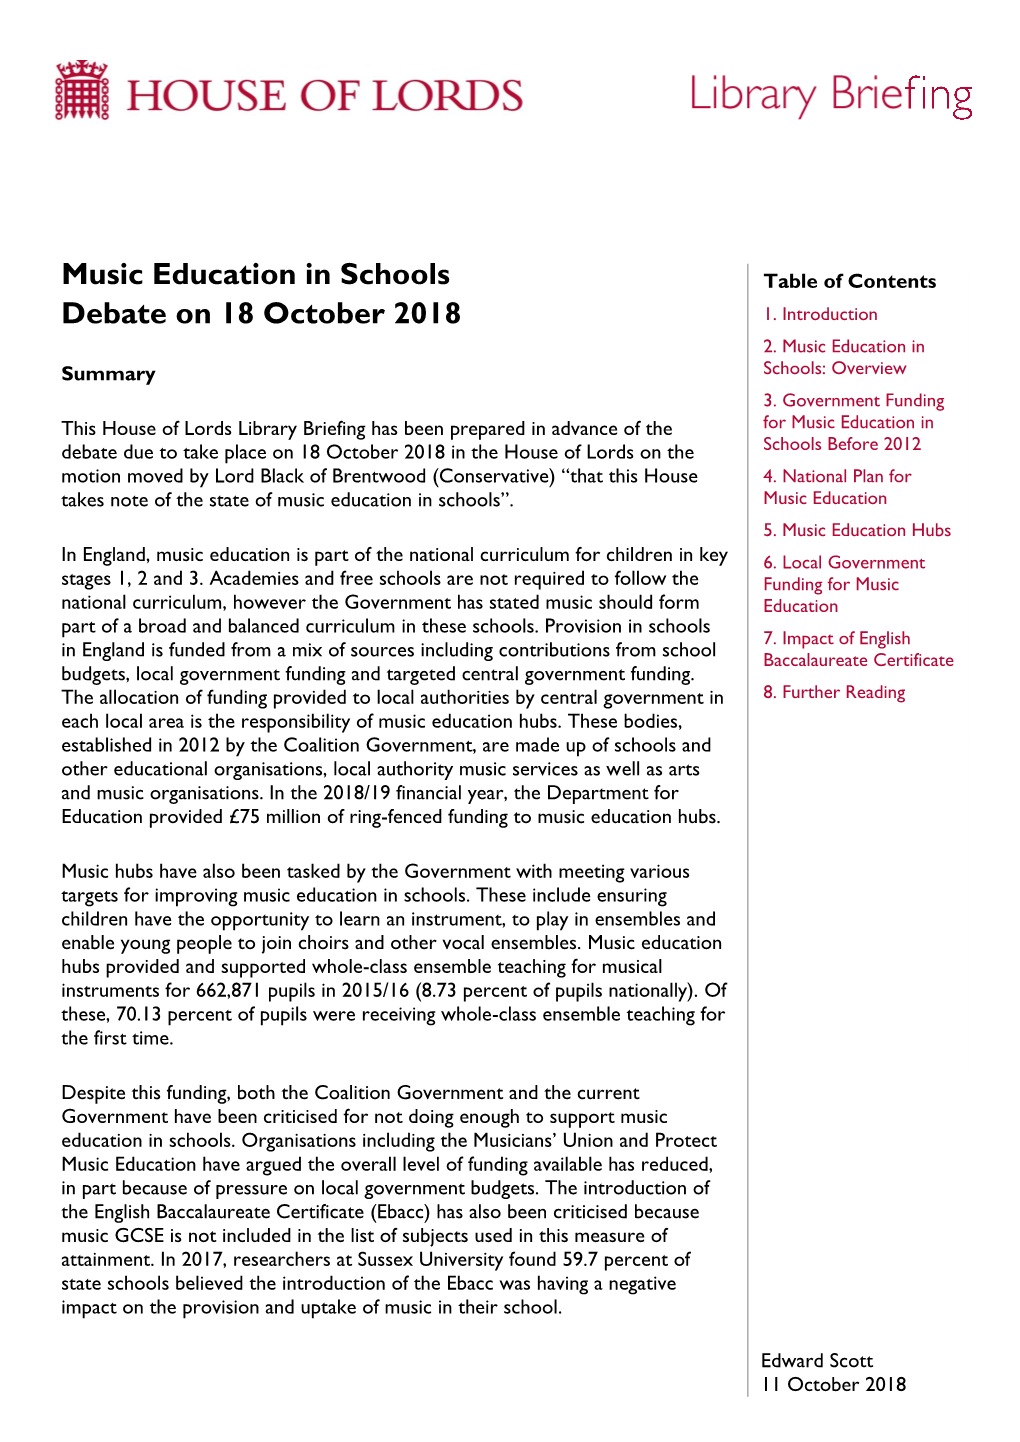 Music Education in Schools Debate on 18 October 2018